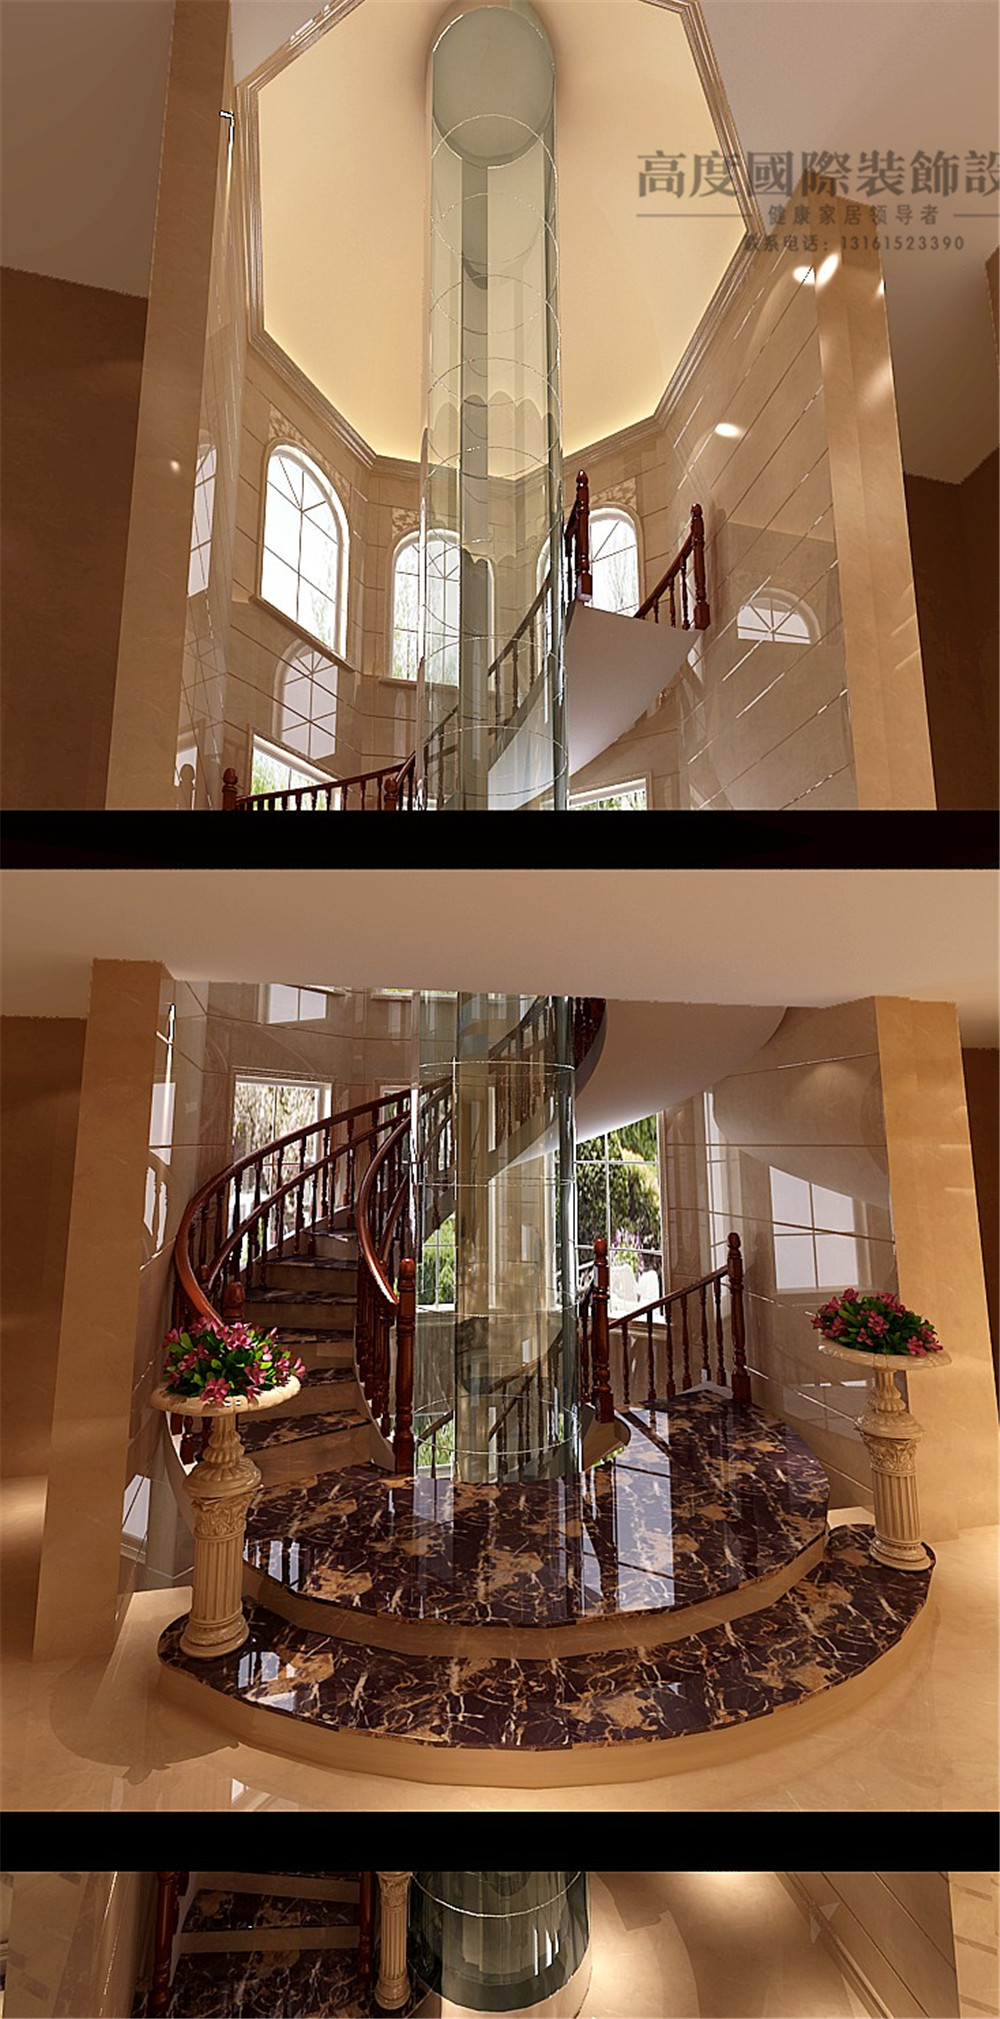 别墅 美式 效果图 装修样板间 装修案例 独栋别墅 室内设计 装修公司 楼梯 楼梯图片来自天天快乐的石头在500平米美式风格别墅装修效果图的分享